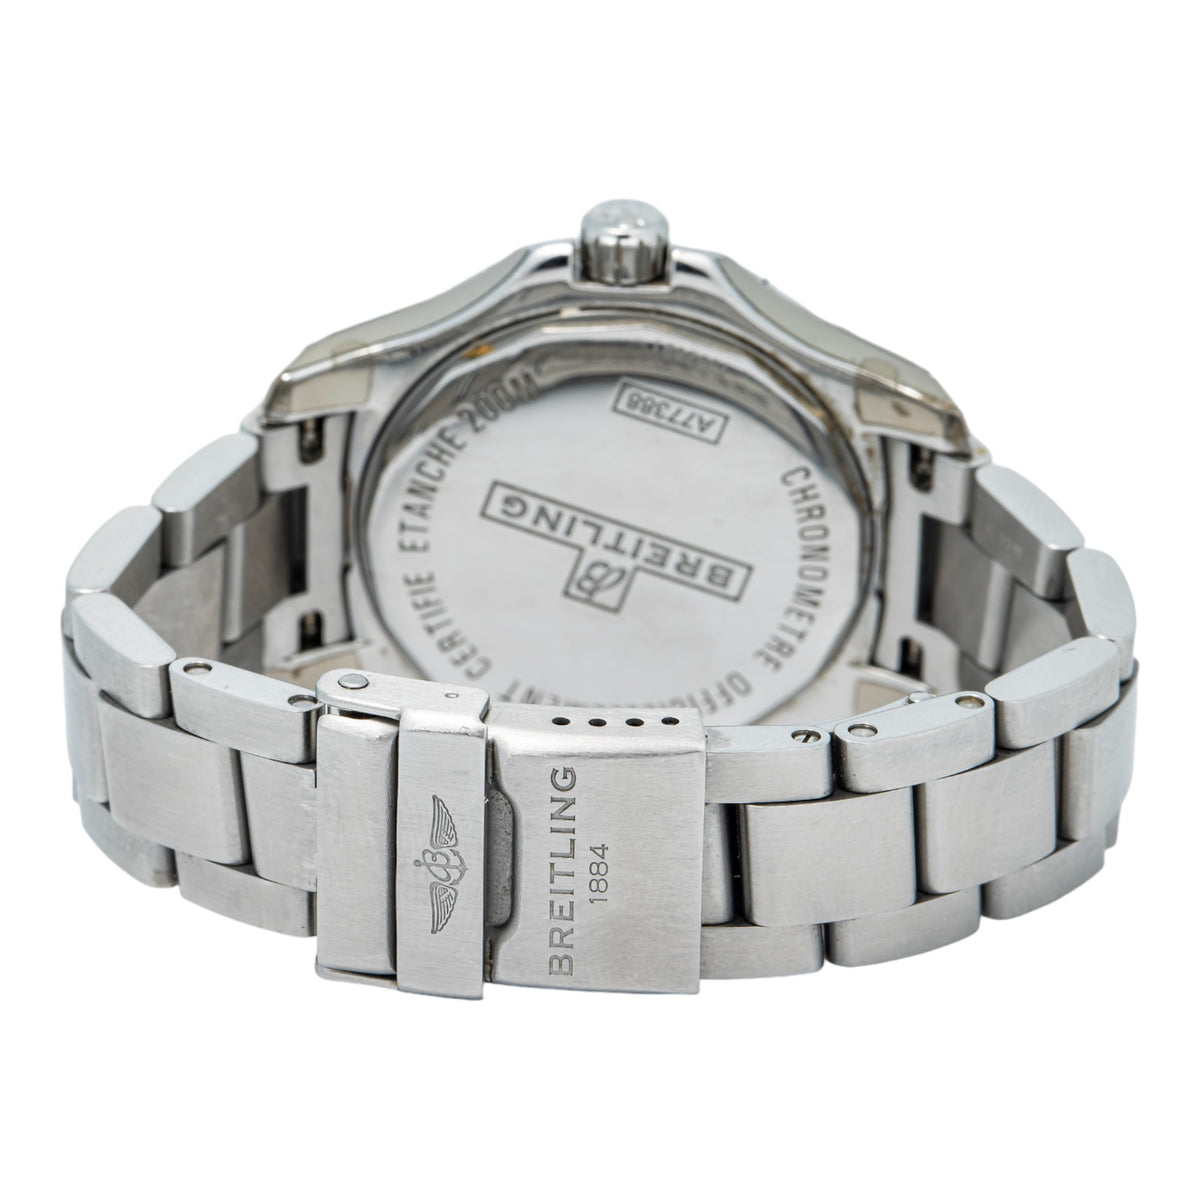 Breitling Colt A77388 Factory Diamond Bezel White Dial Quartz Ladies Watch 33mm